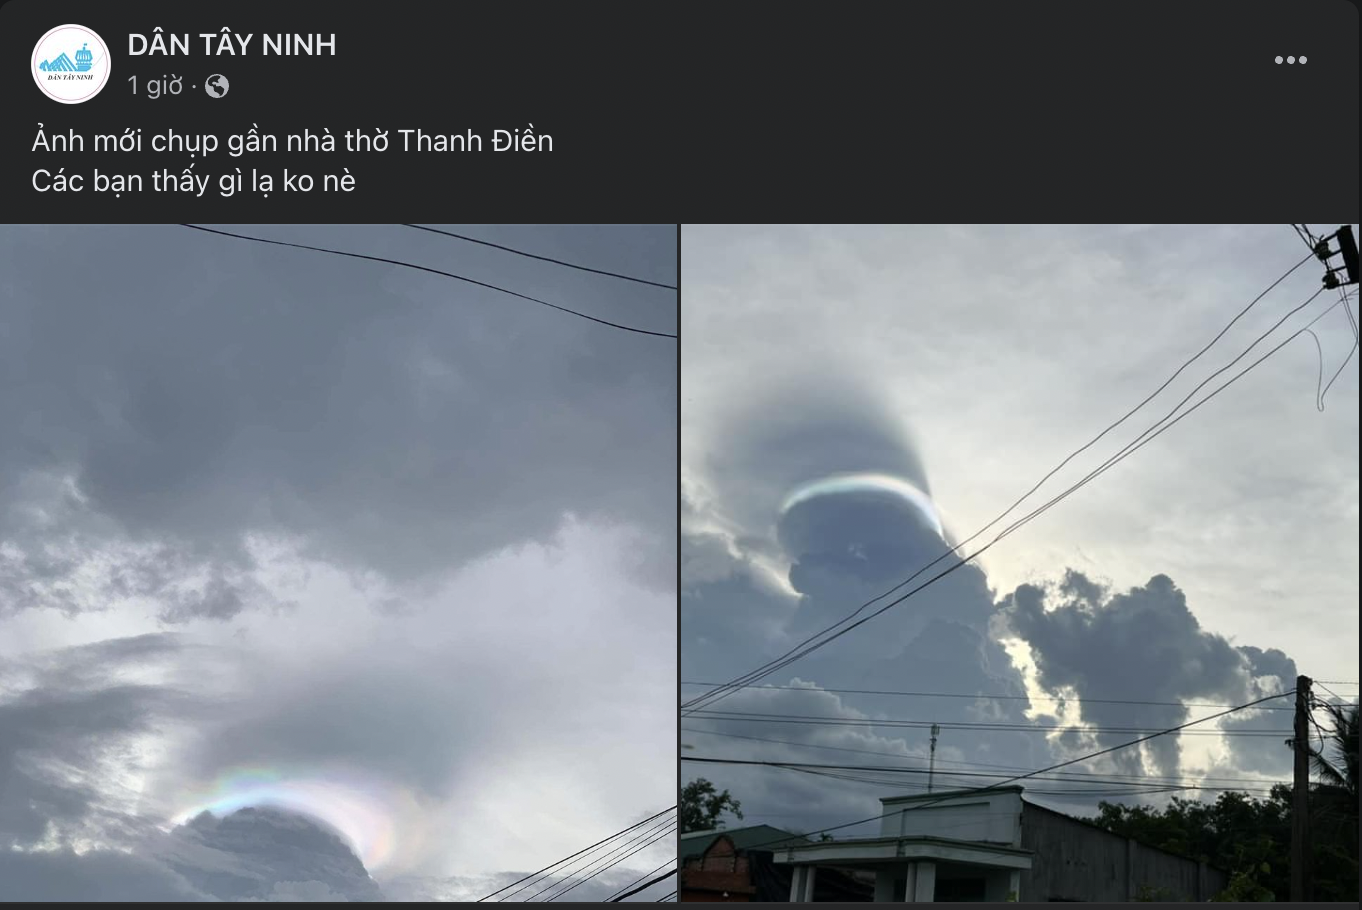 Chiều nay, người dân Tây Ninh thích thú chụp lại những đám mây ‘lạ’ trên bầu trời - Ảnh 1.